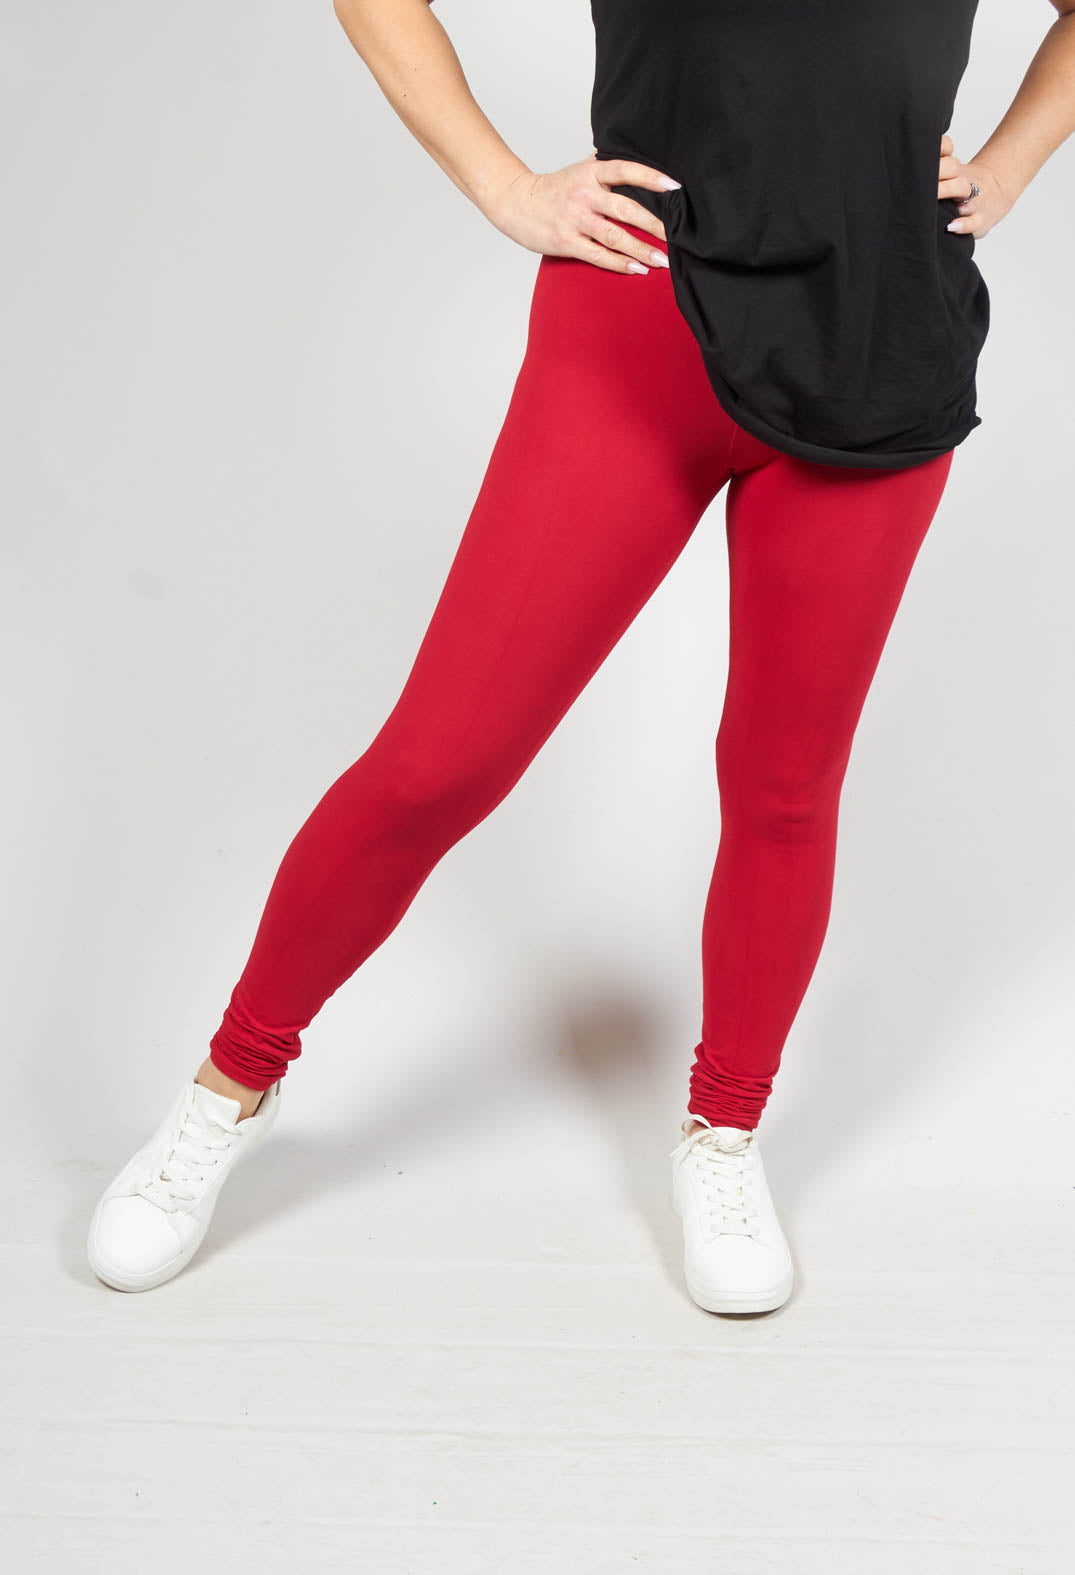 ladies red leggings with elasticated waist